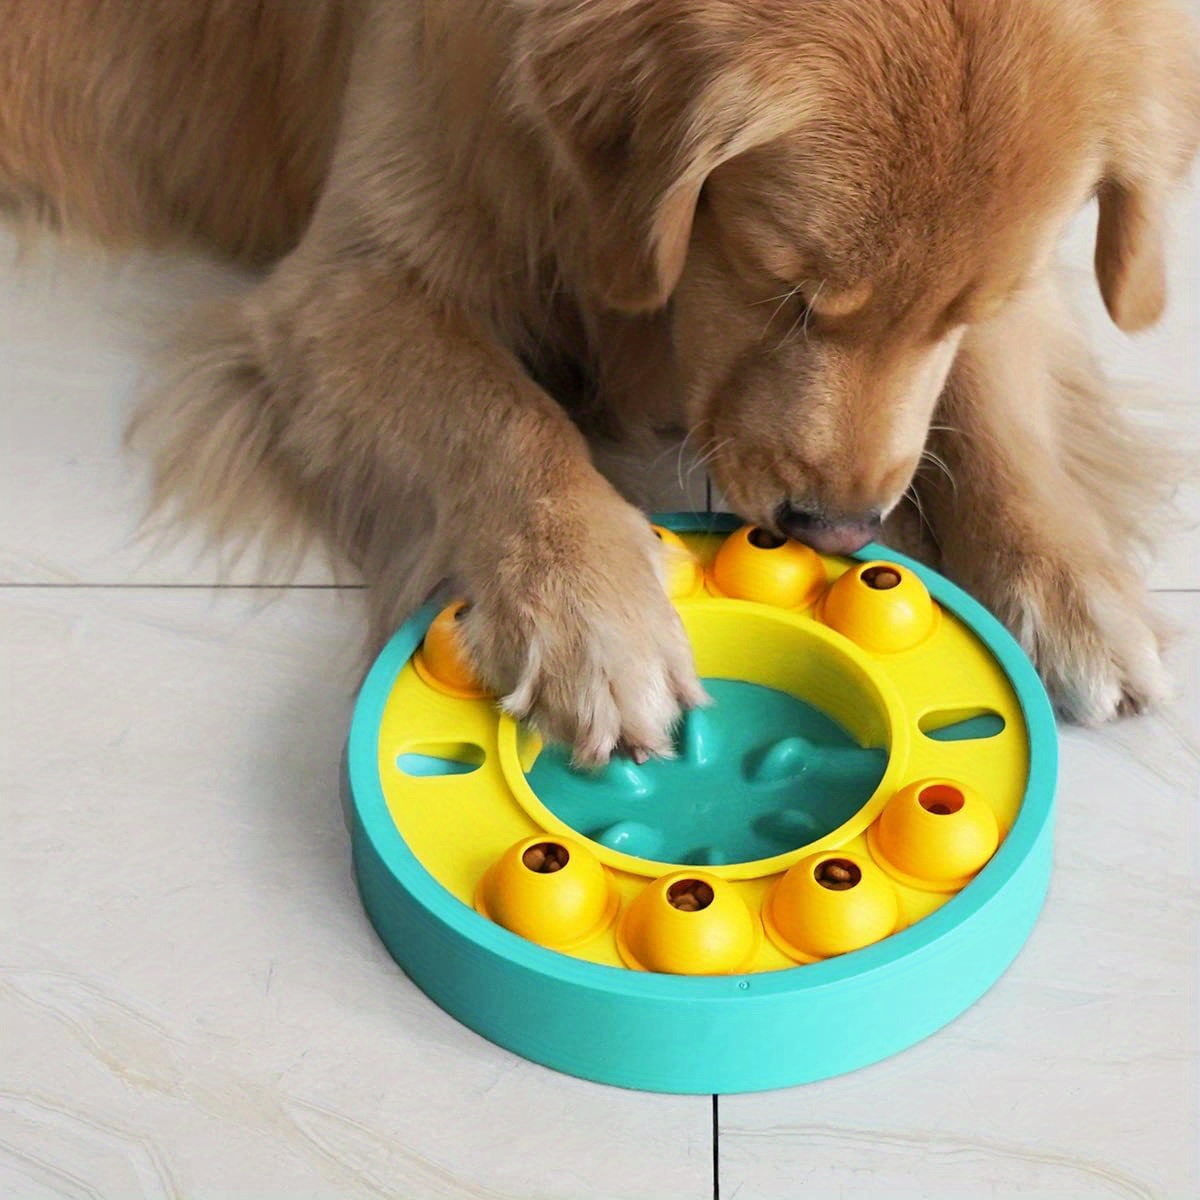 Benepaw Dog Puzzle Toys IQ Training Brain Stimulating Slow Feeding